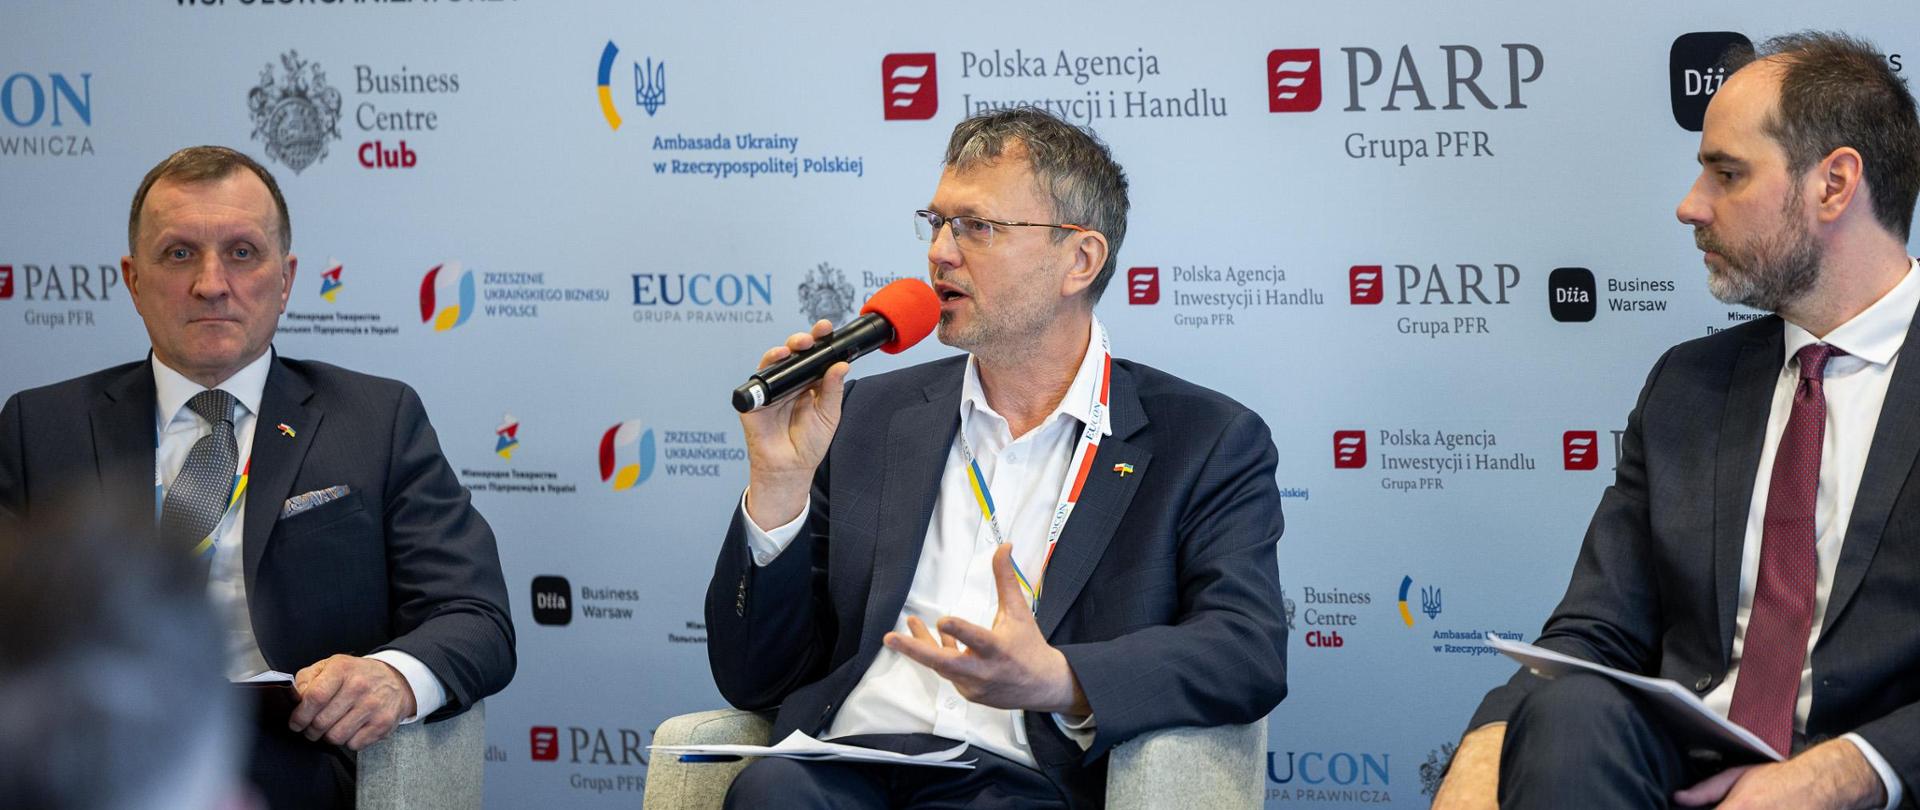 Wiceminister Jacek Bartmiński podczas panelu siedzi na kremowym fotelu z mikrofonem w ręku. Po prawej i lewej stronie siedzą dwaj inni paneliści. W tle ścianka z logotypami współorganizatorów, patronów i partnerów